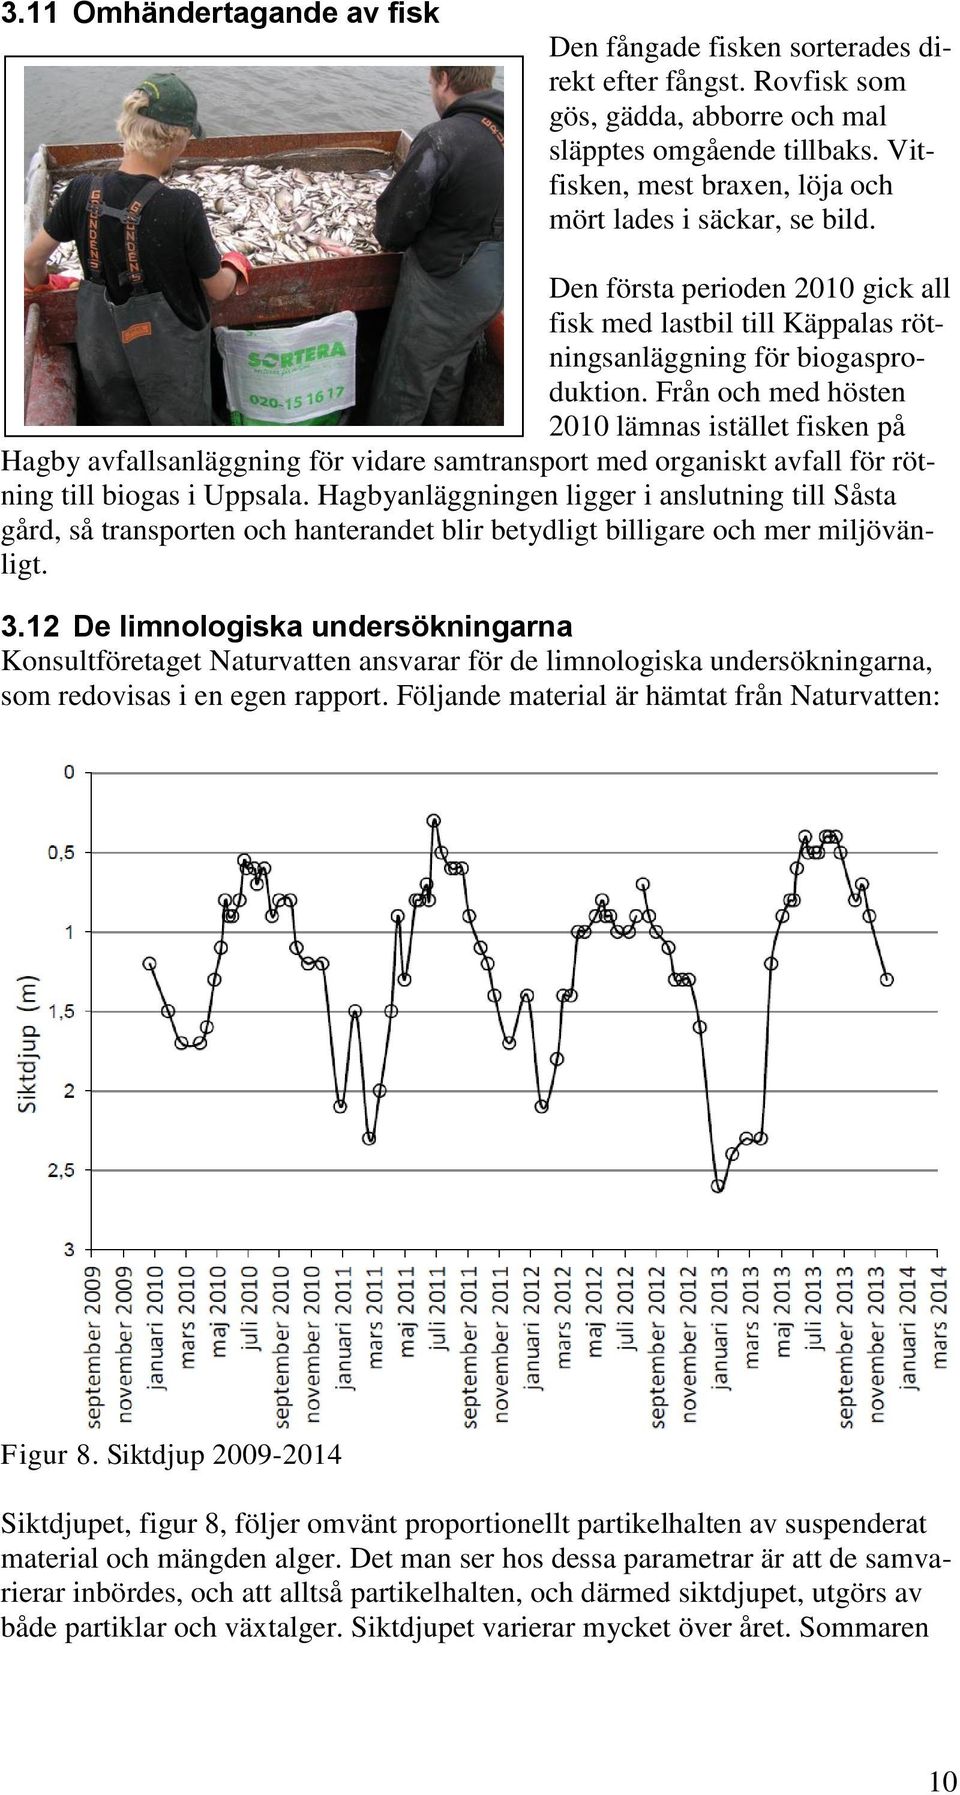 Från och med hösten 2010 lämnas istället fisken på Hagby avfallsanläggning för vidare samtransport med organiskt avfall för rötning till biogas i Uppsala.